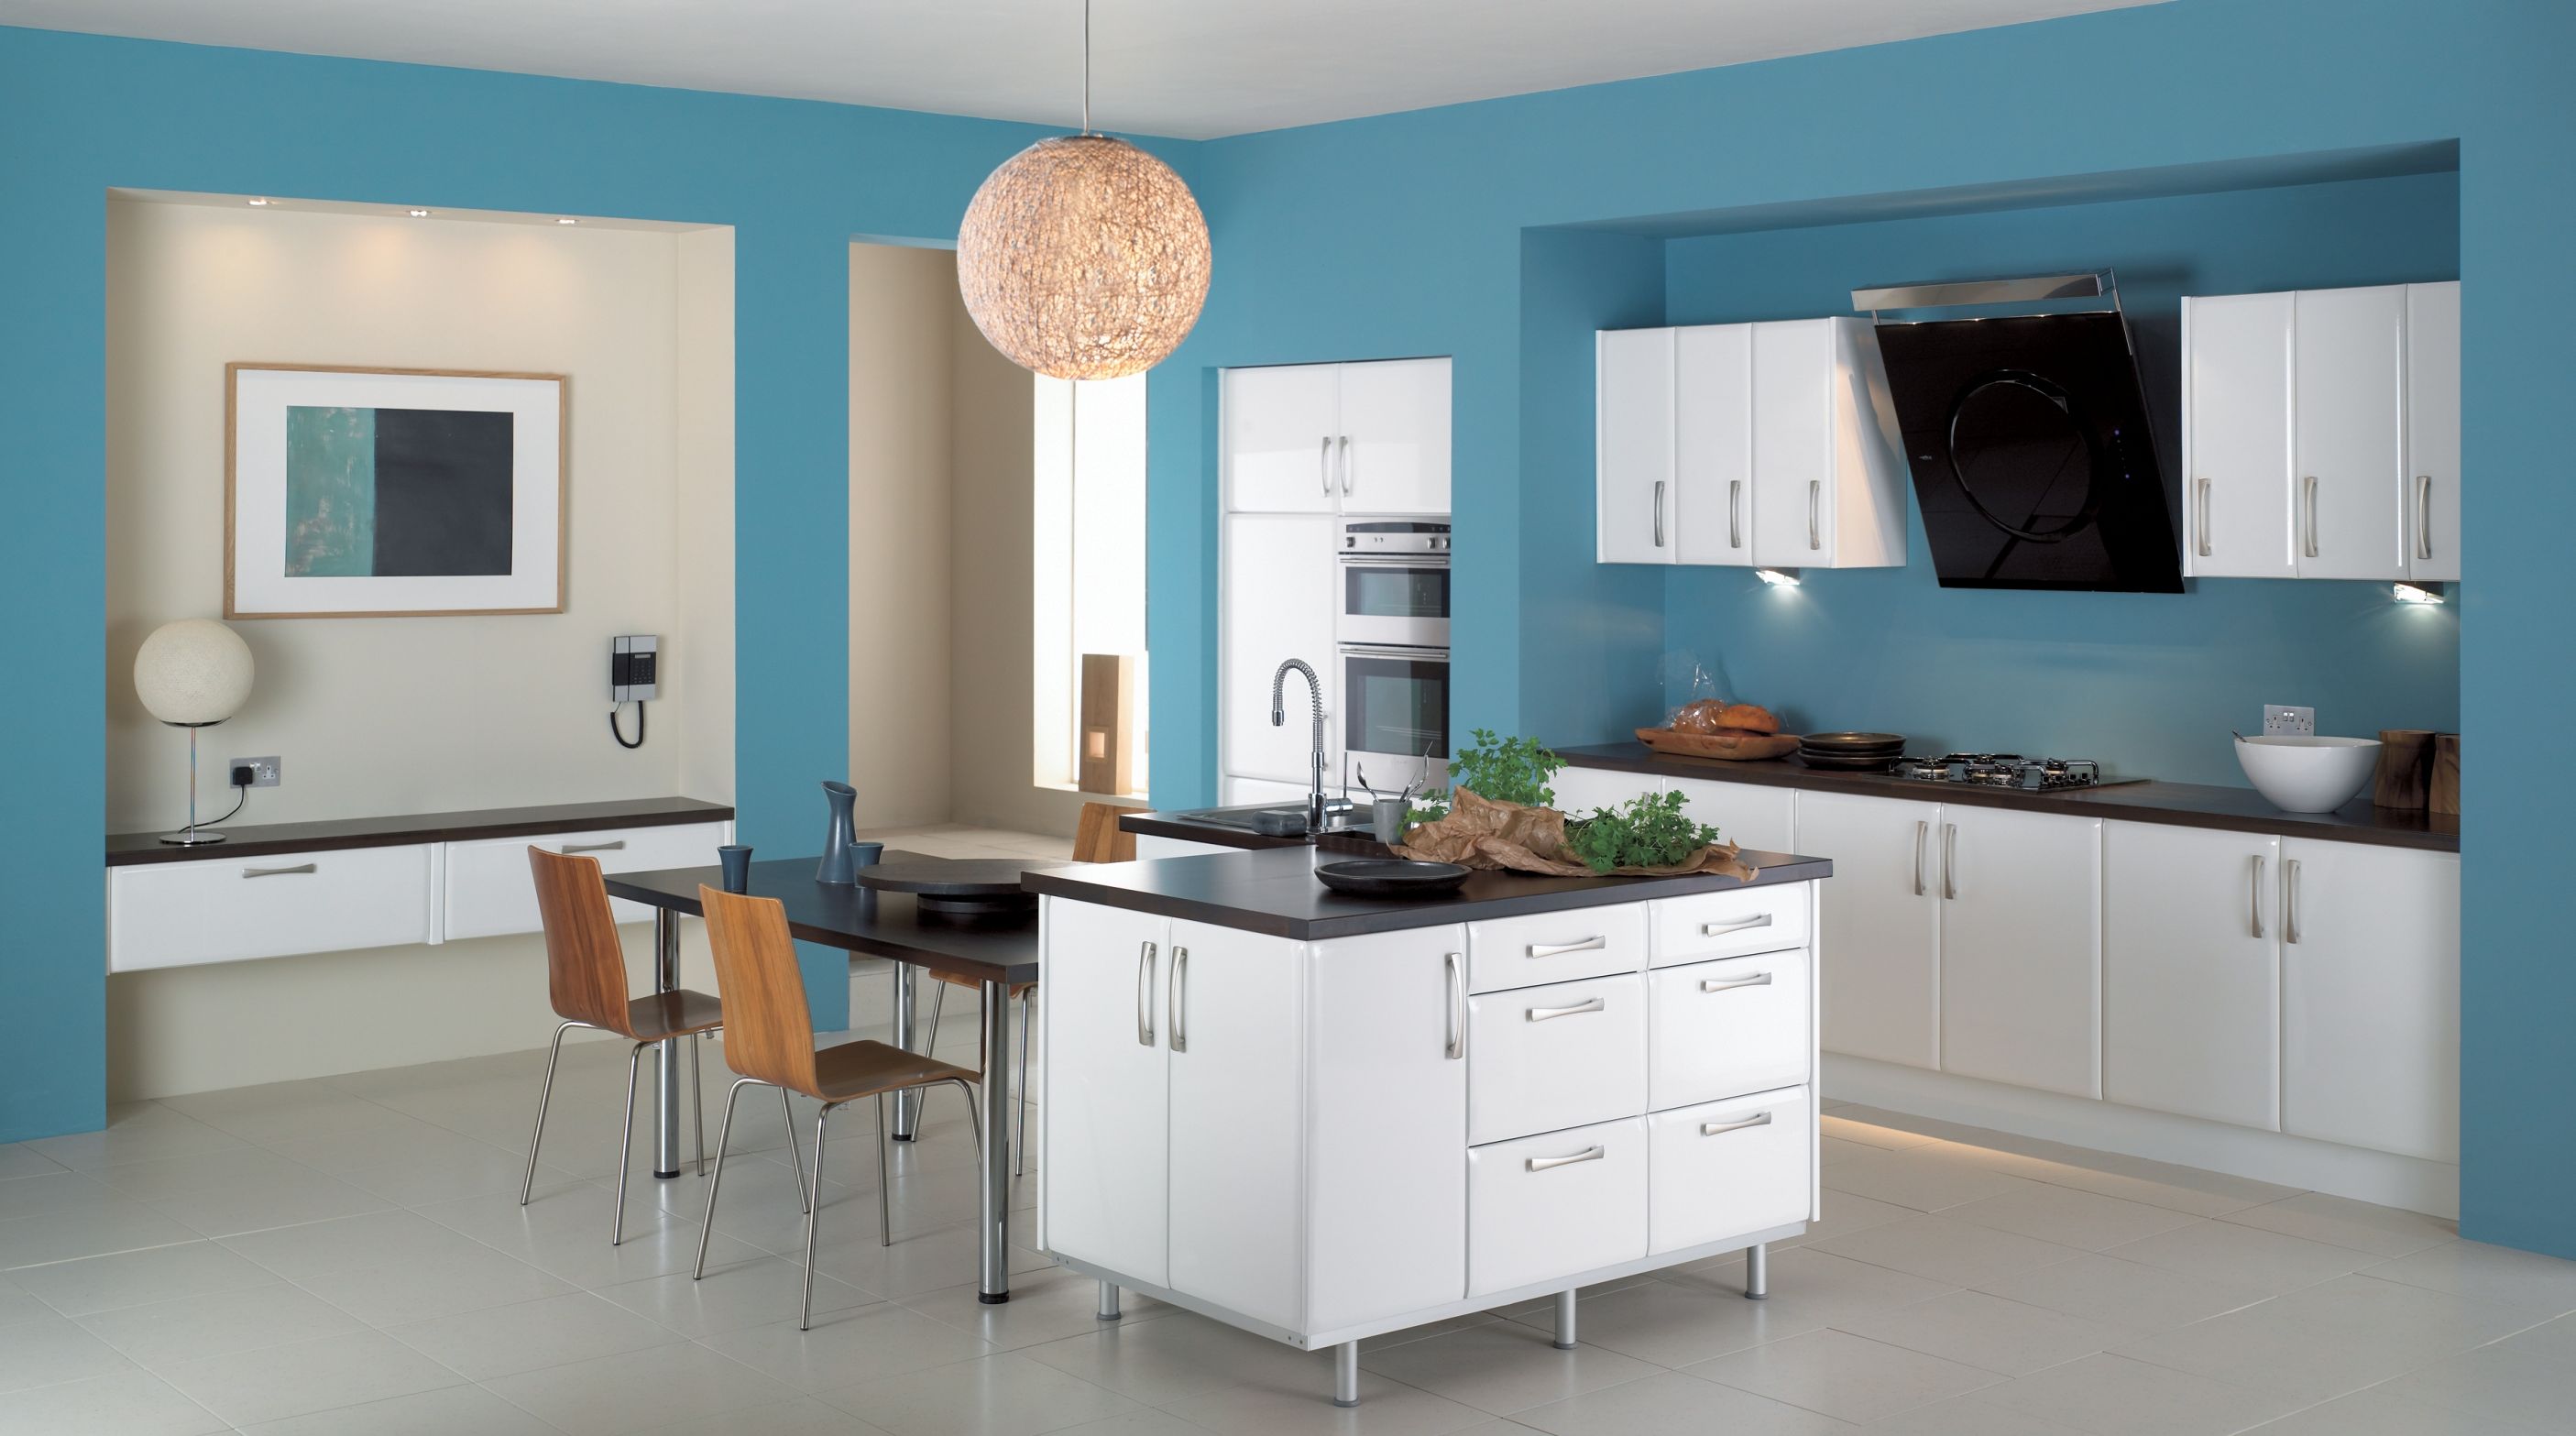 Покрасить обои на кухне. Голубые стены на кухне. Голубая кухня в интерьере. Кухня голубого цвета в интерьере. Голубой кухонный гарнитур в интерьере.